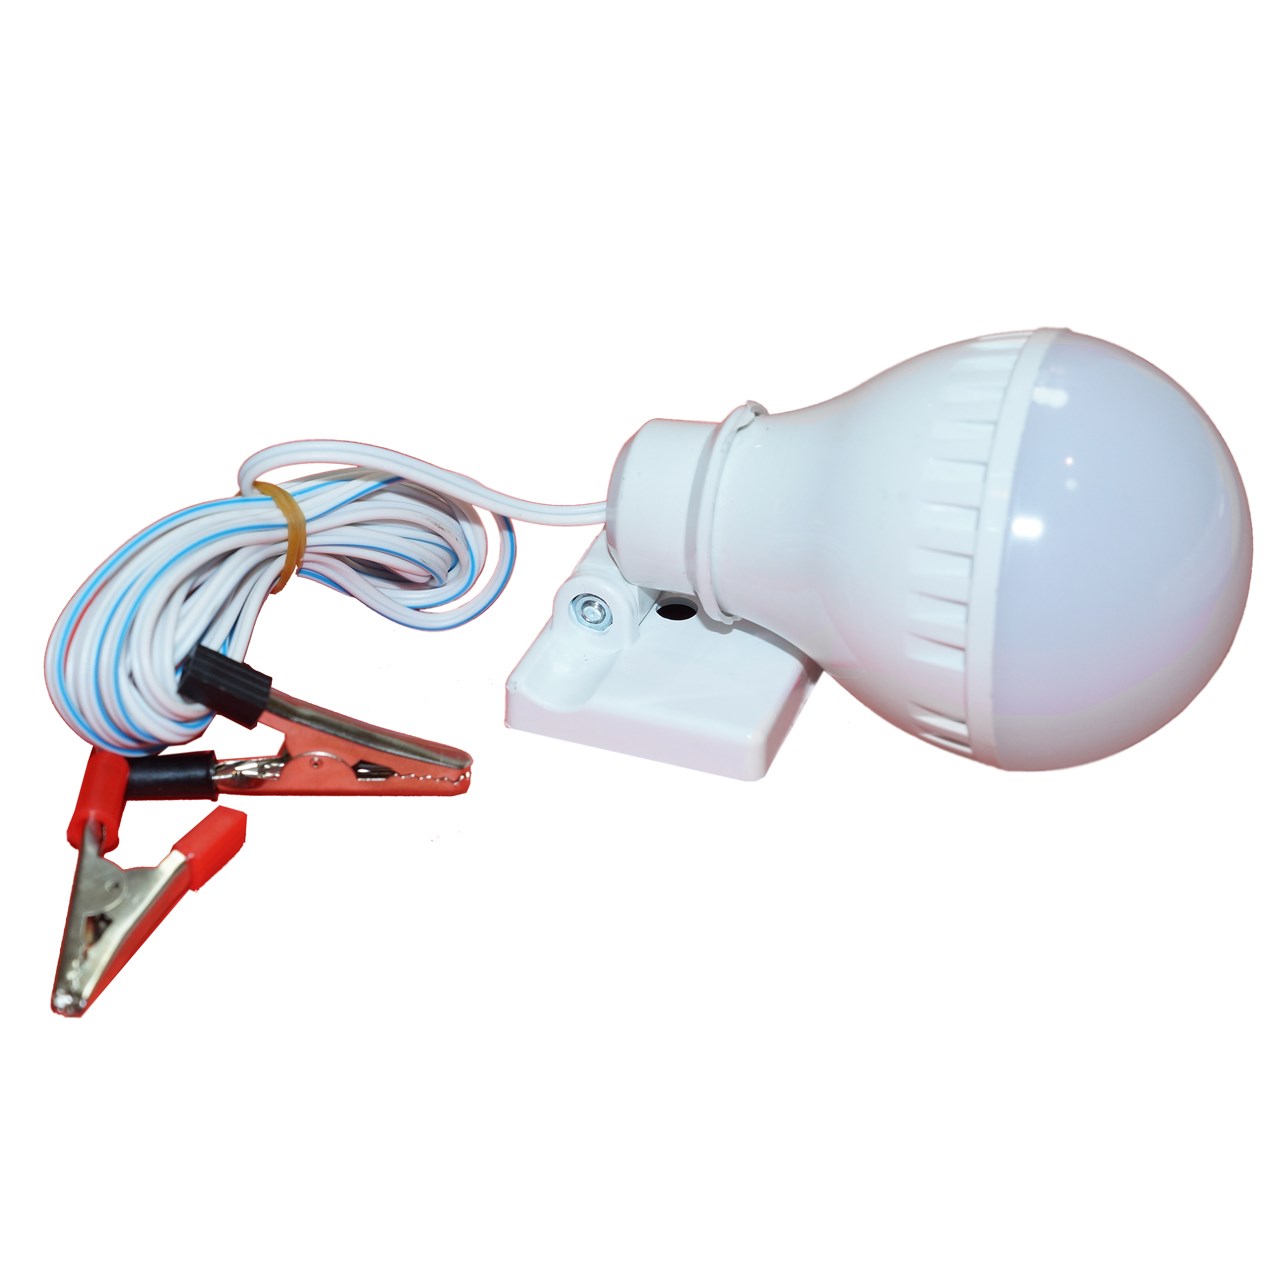 لامپ سیار خودرو صنایع روشنایی هرو مدل LHPL-12V